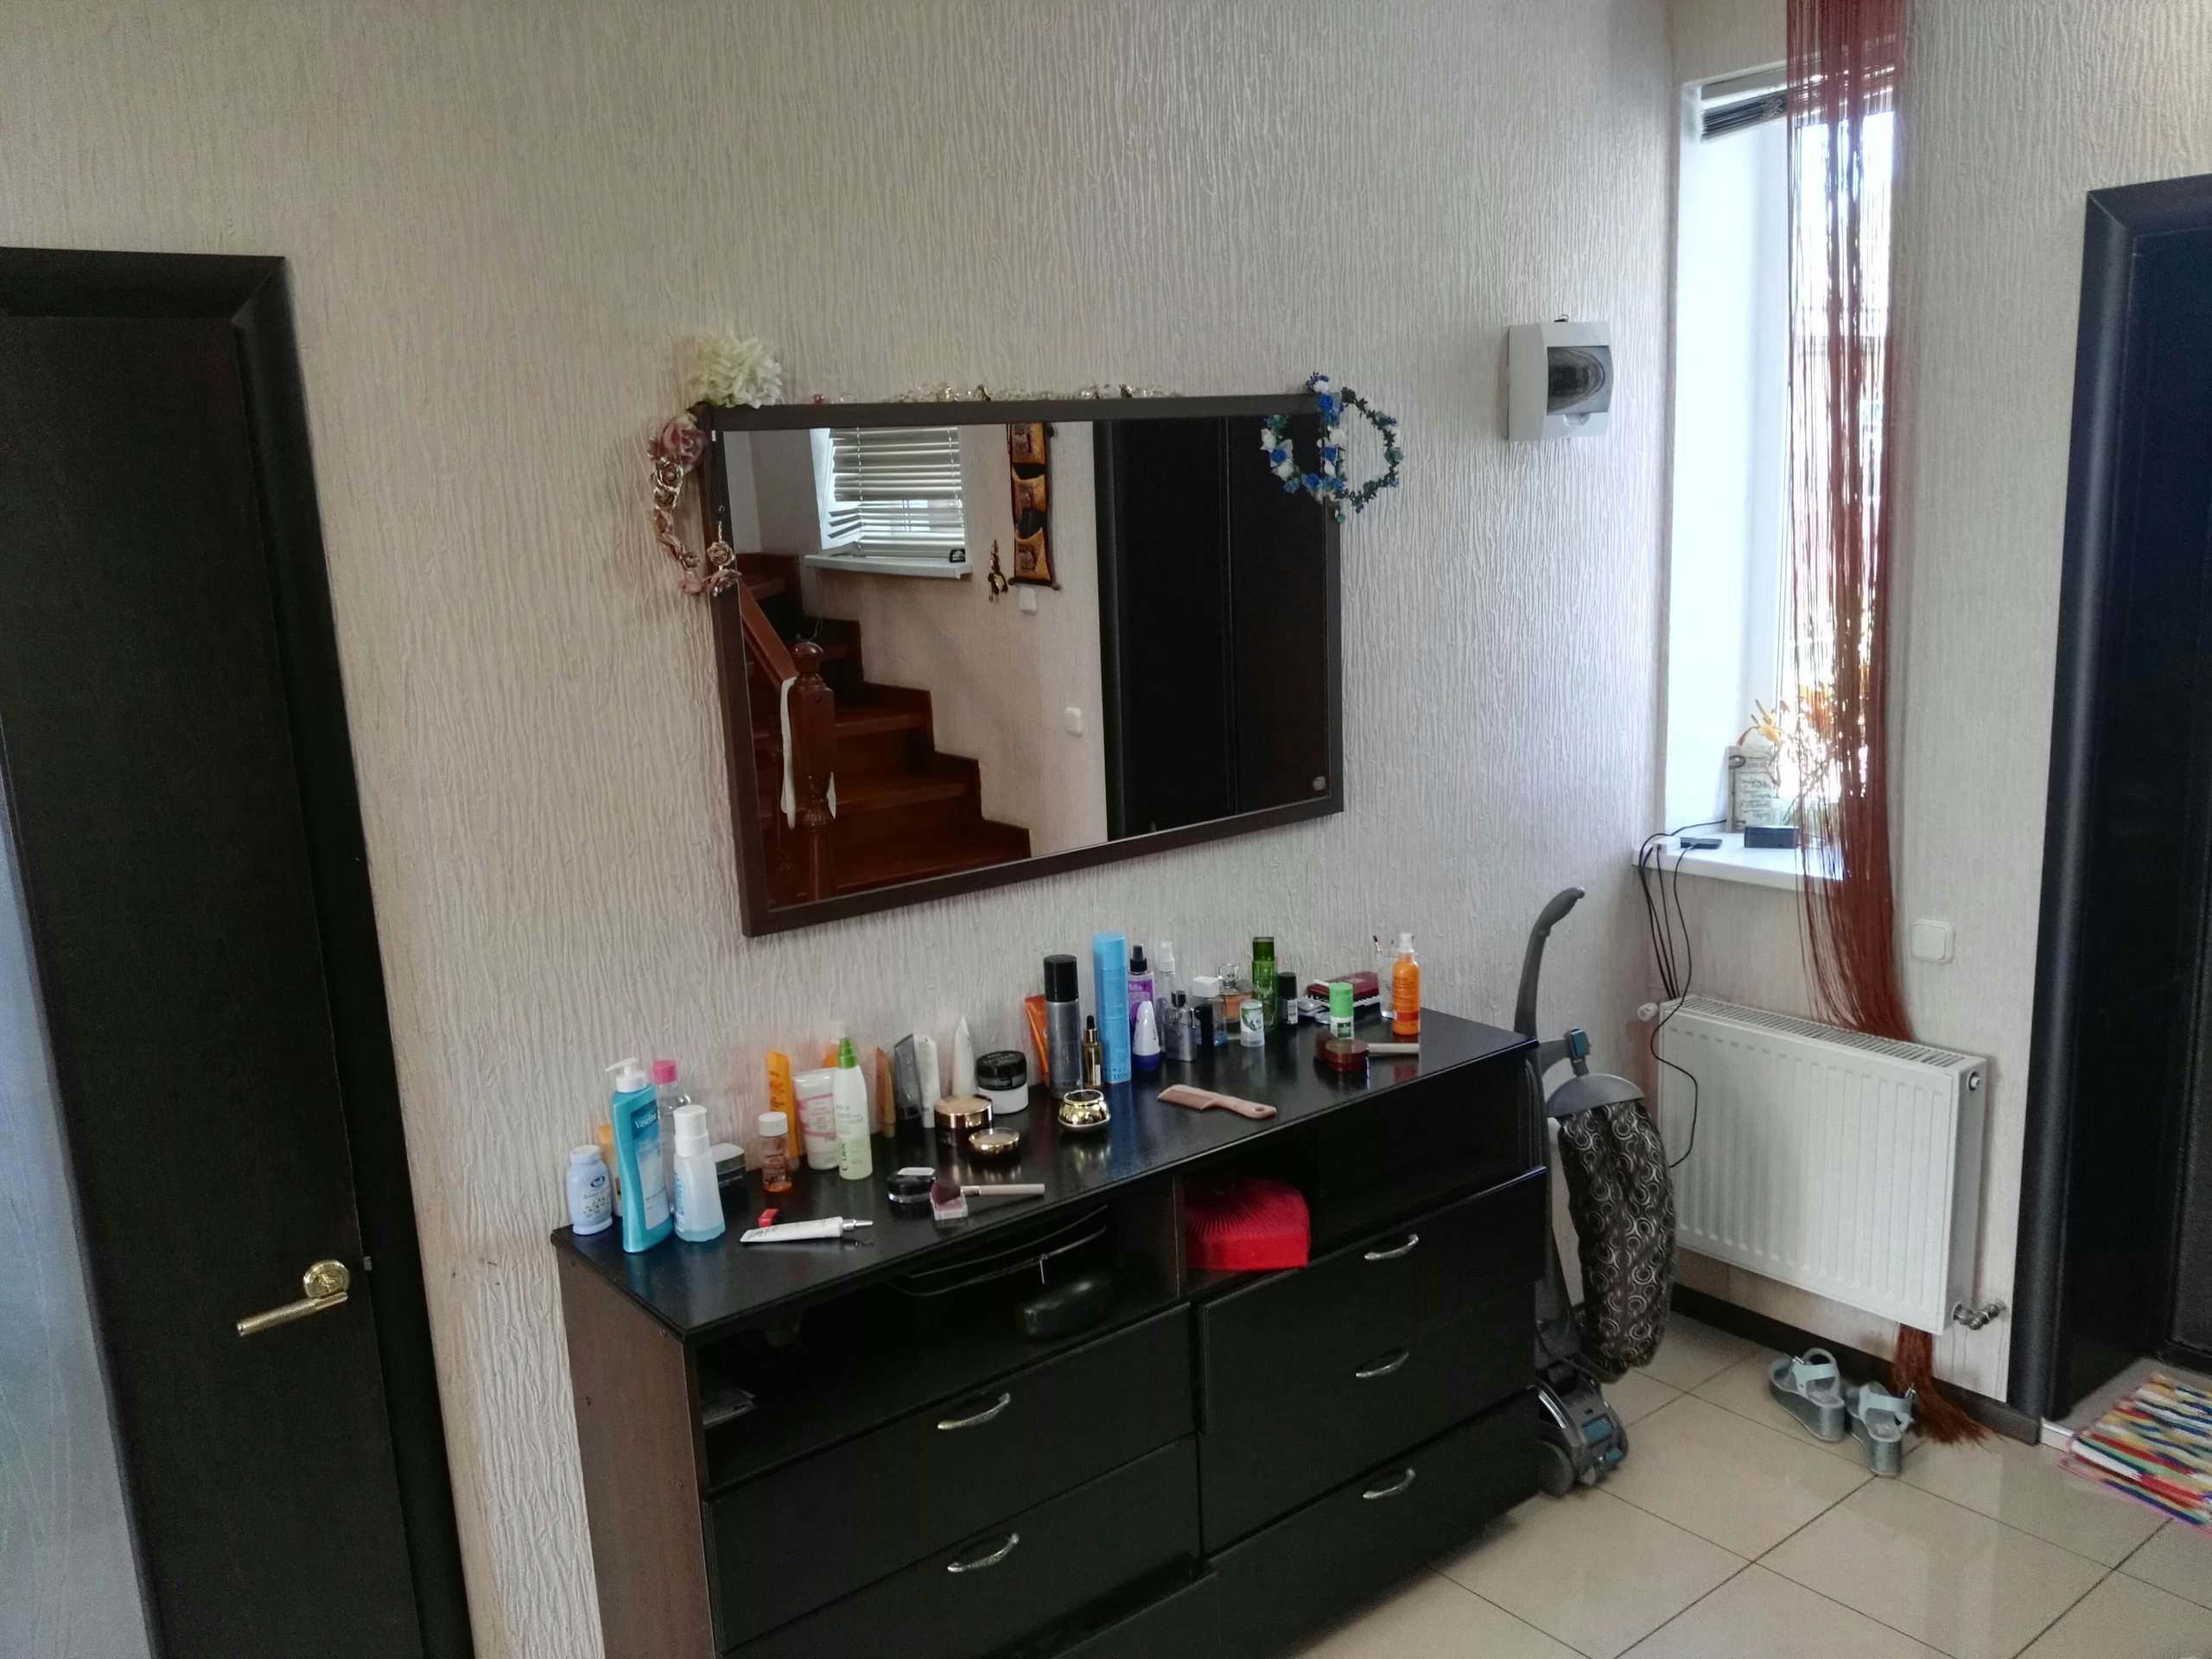 Интерьер ванной с зеркалом на двери в современном стиле